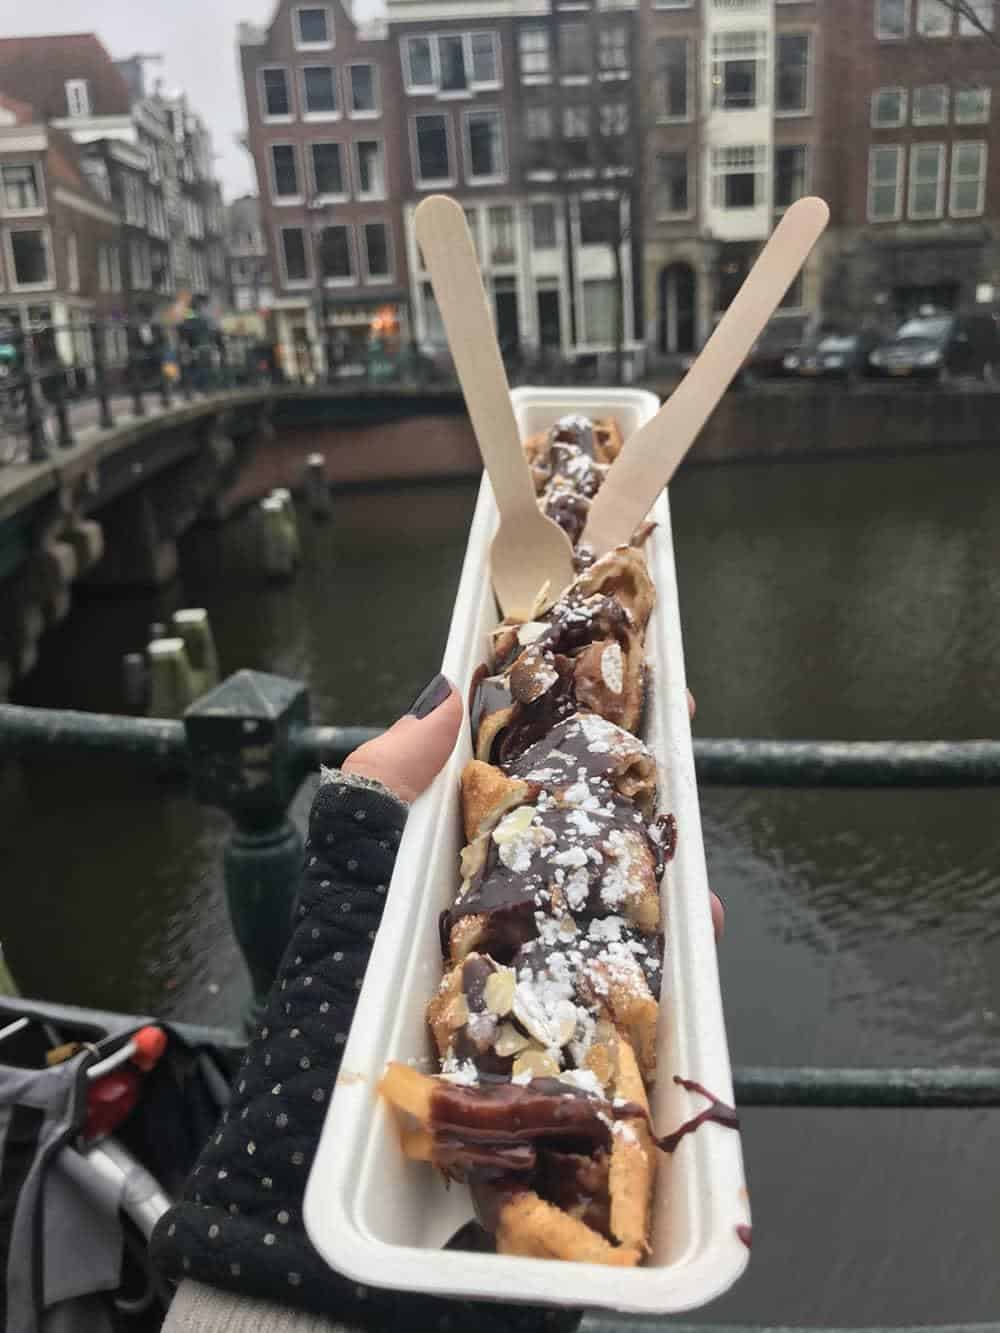 Vegan pancakes at Happy Pig, Amsterdam